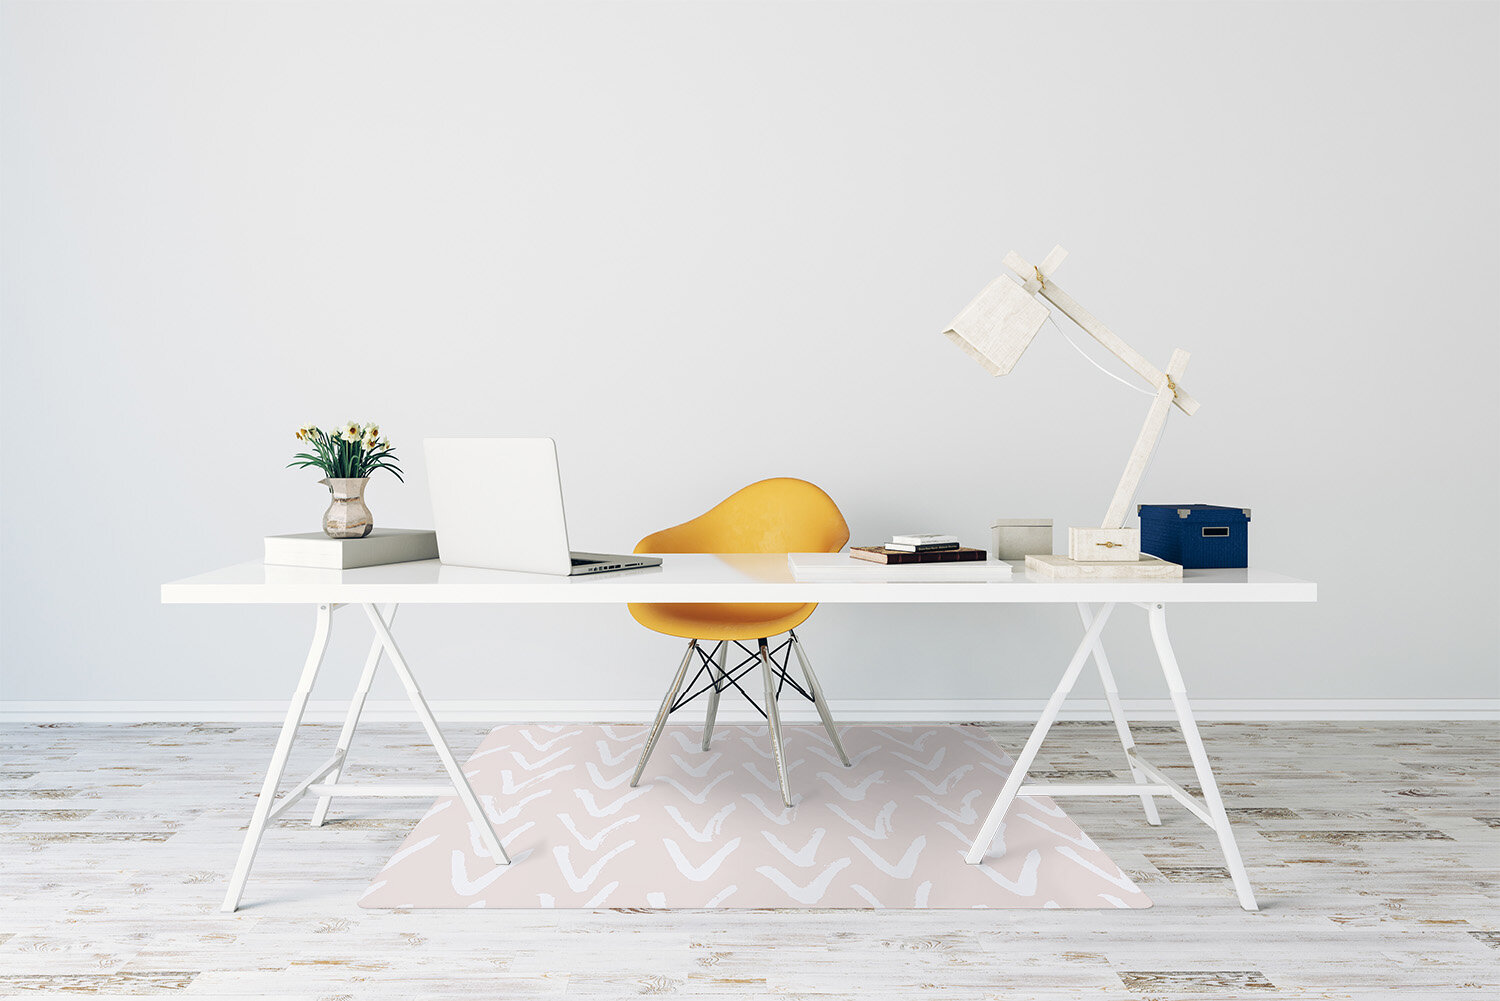 Apsauginis grindų kilimėlis Decormat V ryškiai rožinė, įvairių spalvų kaina ir informacija | Biuro kėdės | pigu.lt